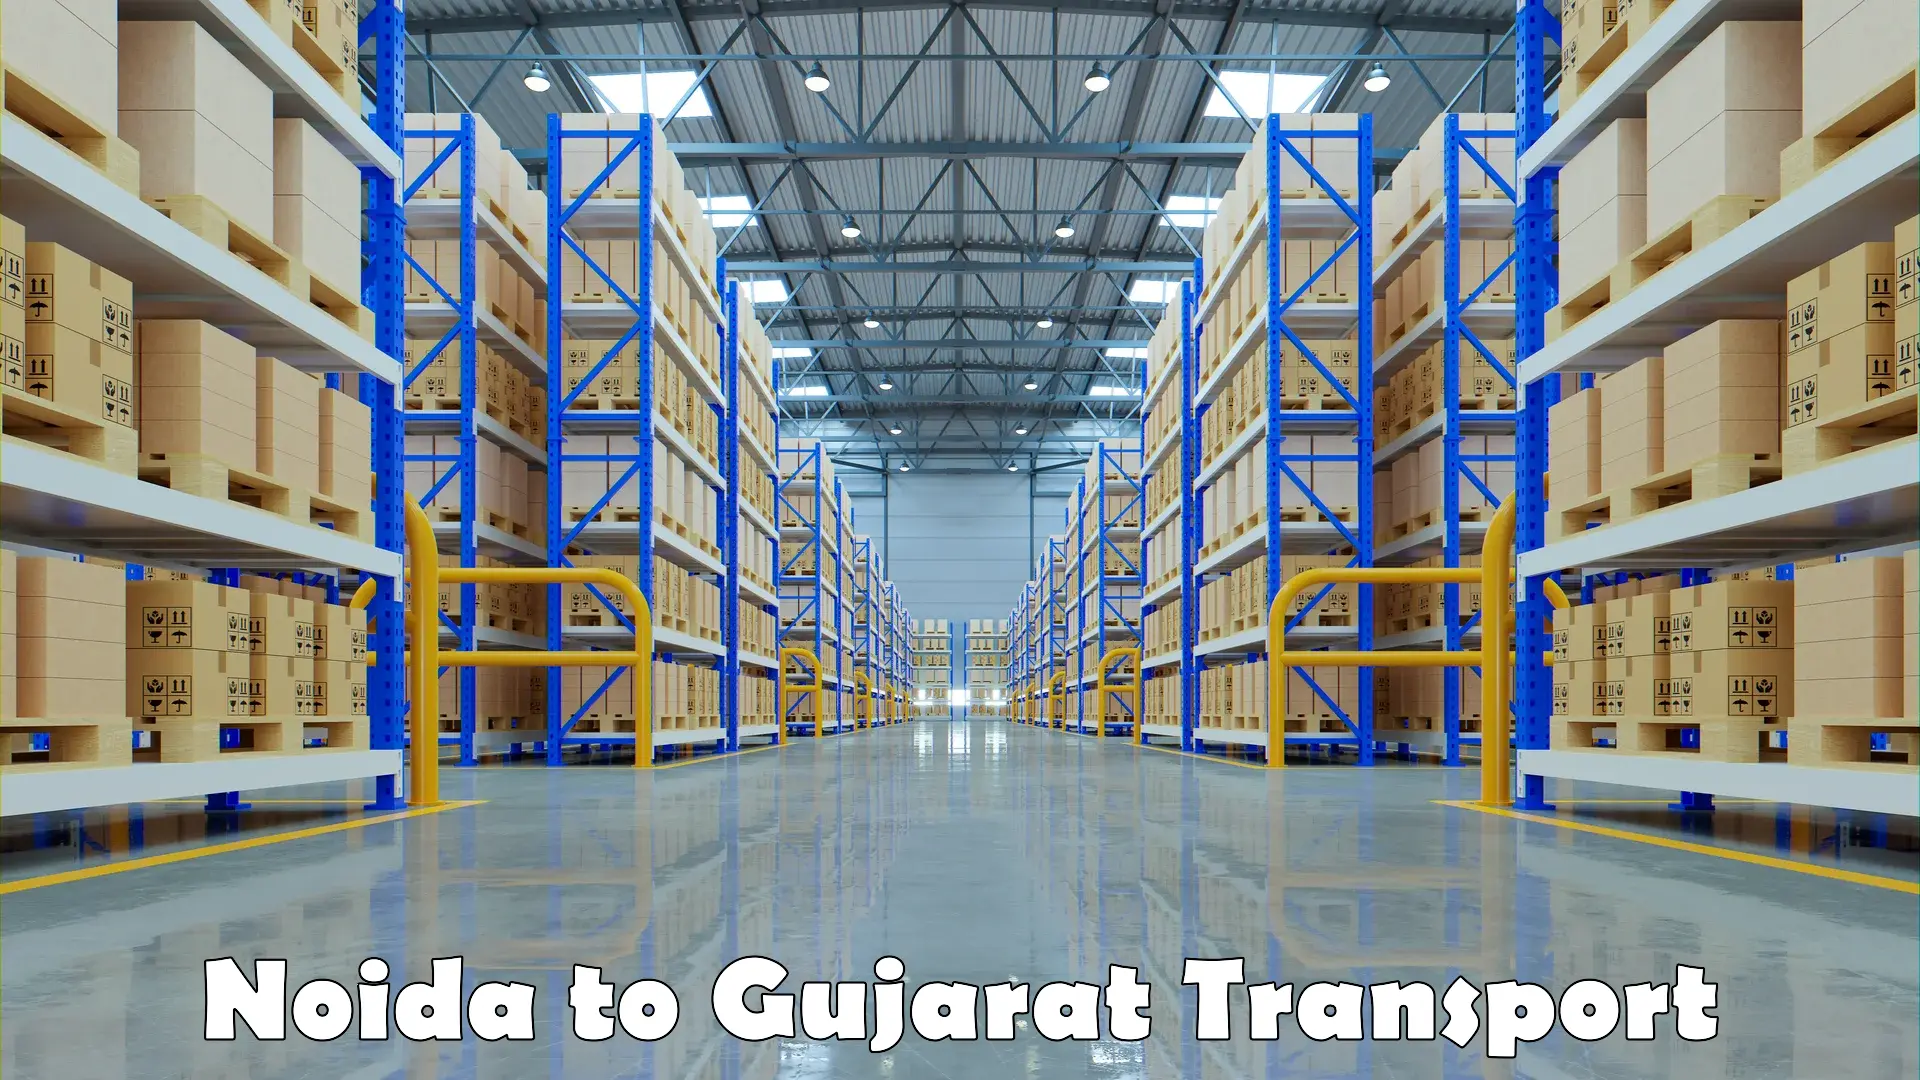 Furniture transport service Noida to Gujarat